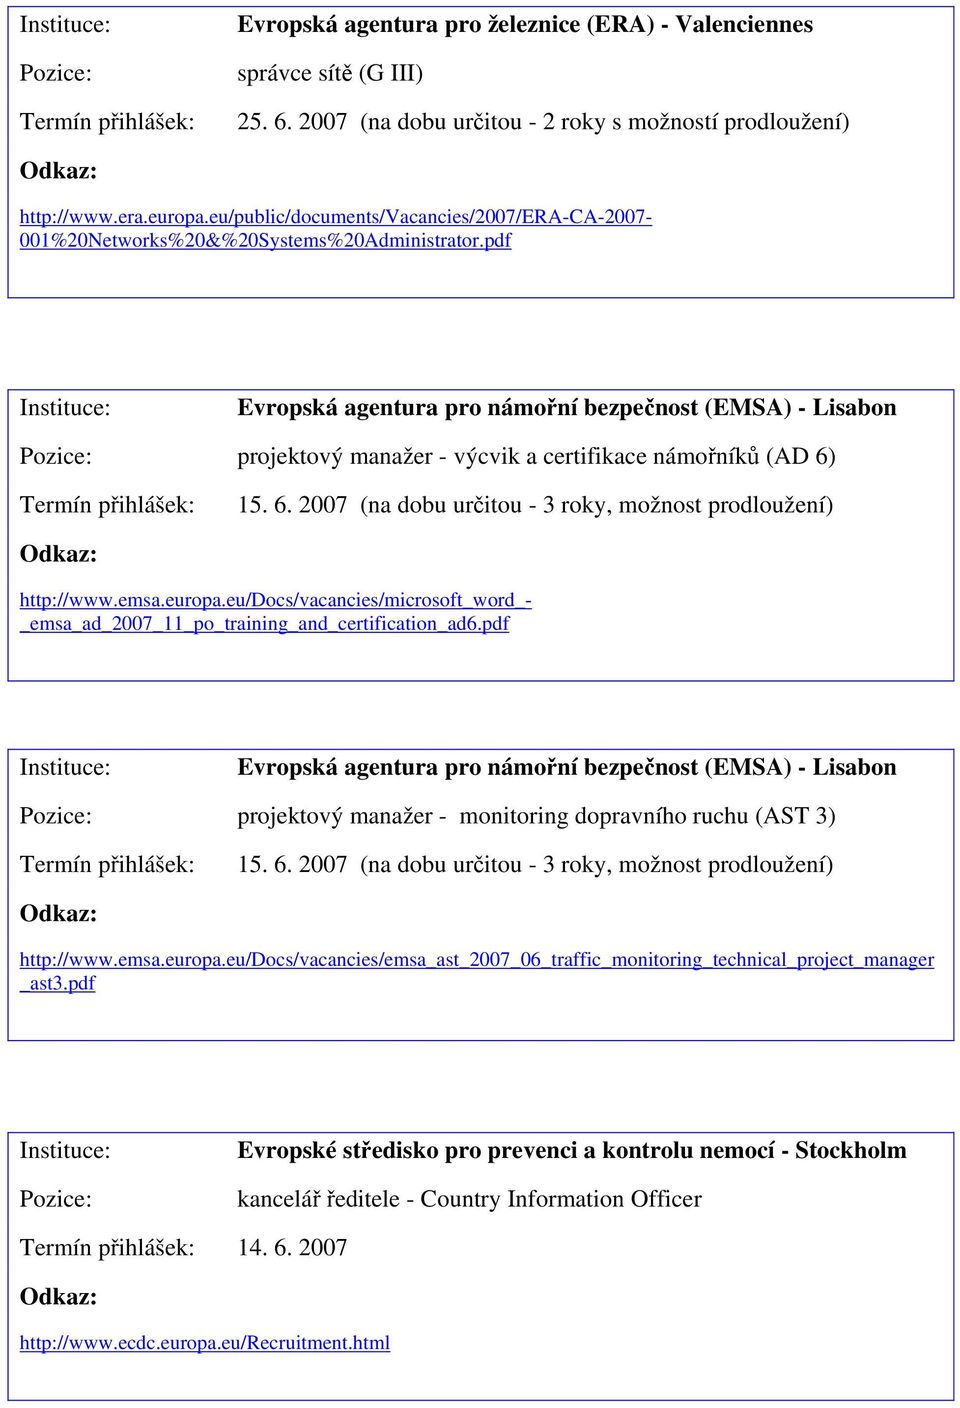 pdf Evropská agentura pro námořní bezpečnost (EMSA) - Lisabon projektový manažer - výcvik a certifikace námořníků (AD 6) 15. 6. 2007 (na dobu určitou - 3 roky, možnost prodloužení) http://www.emsa.